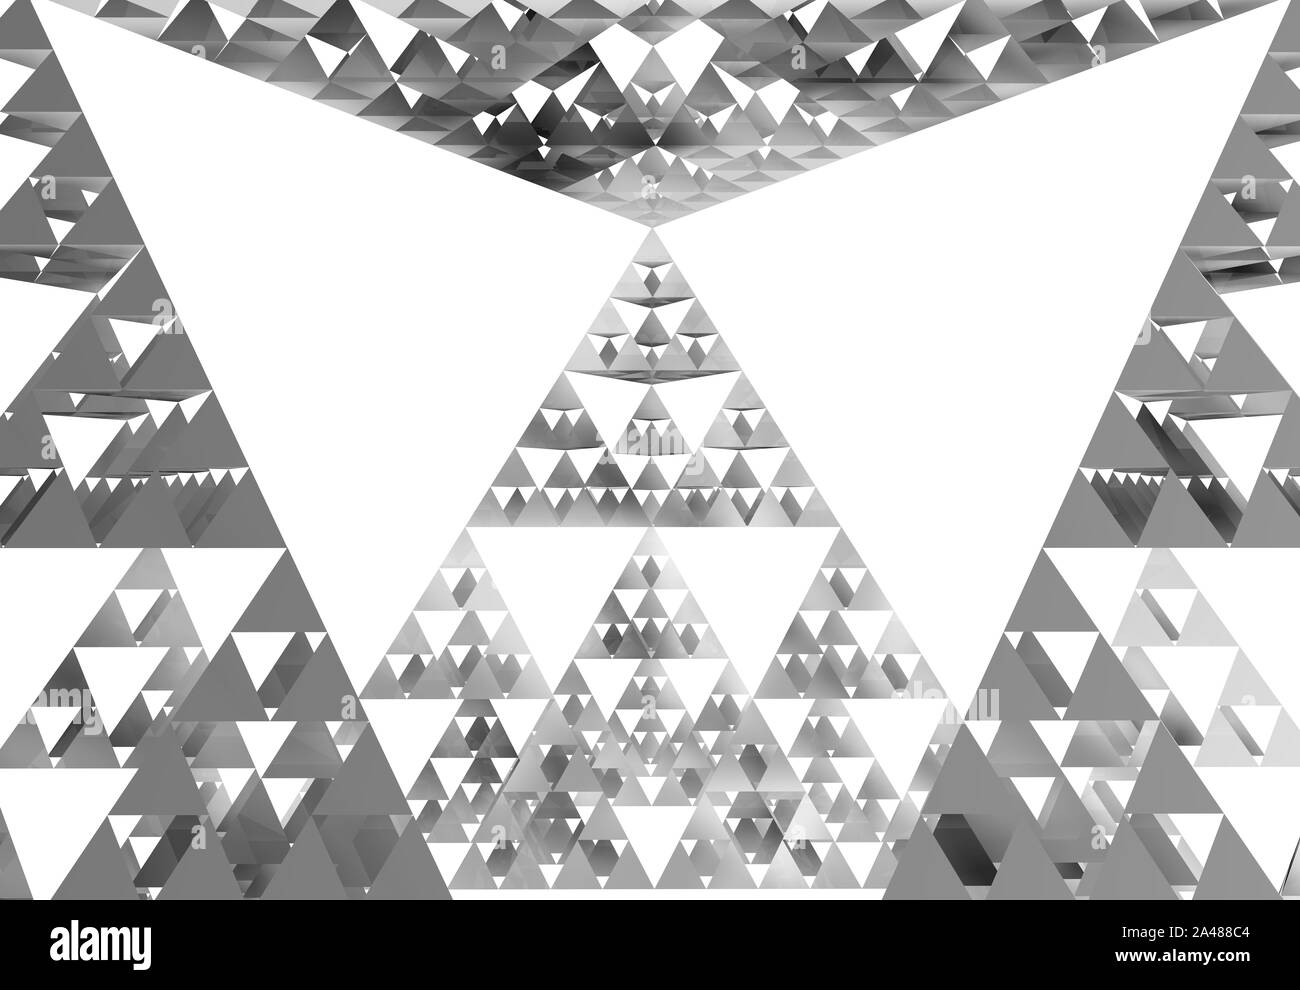 Grau Sierpinski-dreieck close-up auf weißem Hintergrund. Es ist eine Fraktale mit der allgemeinen Form eines gleichseitigen Dreiecks, rekursiv unterteilt in Stockfoto